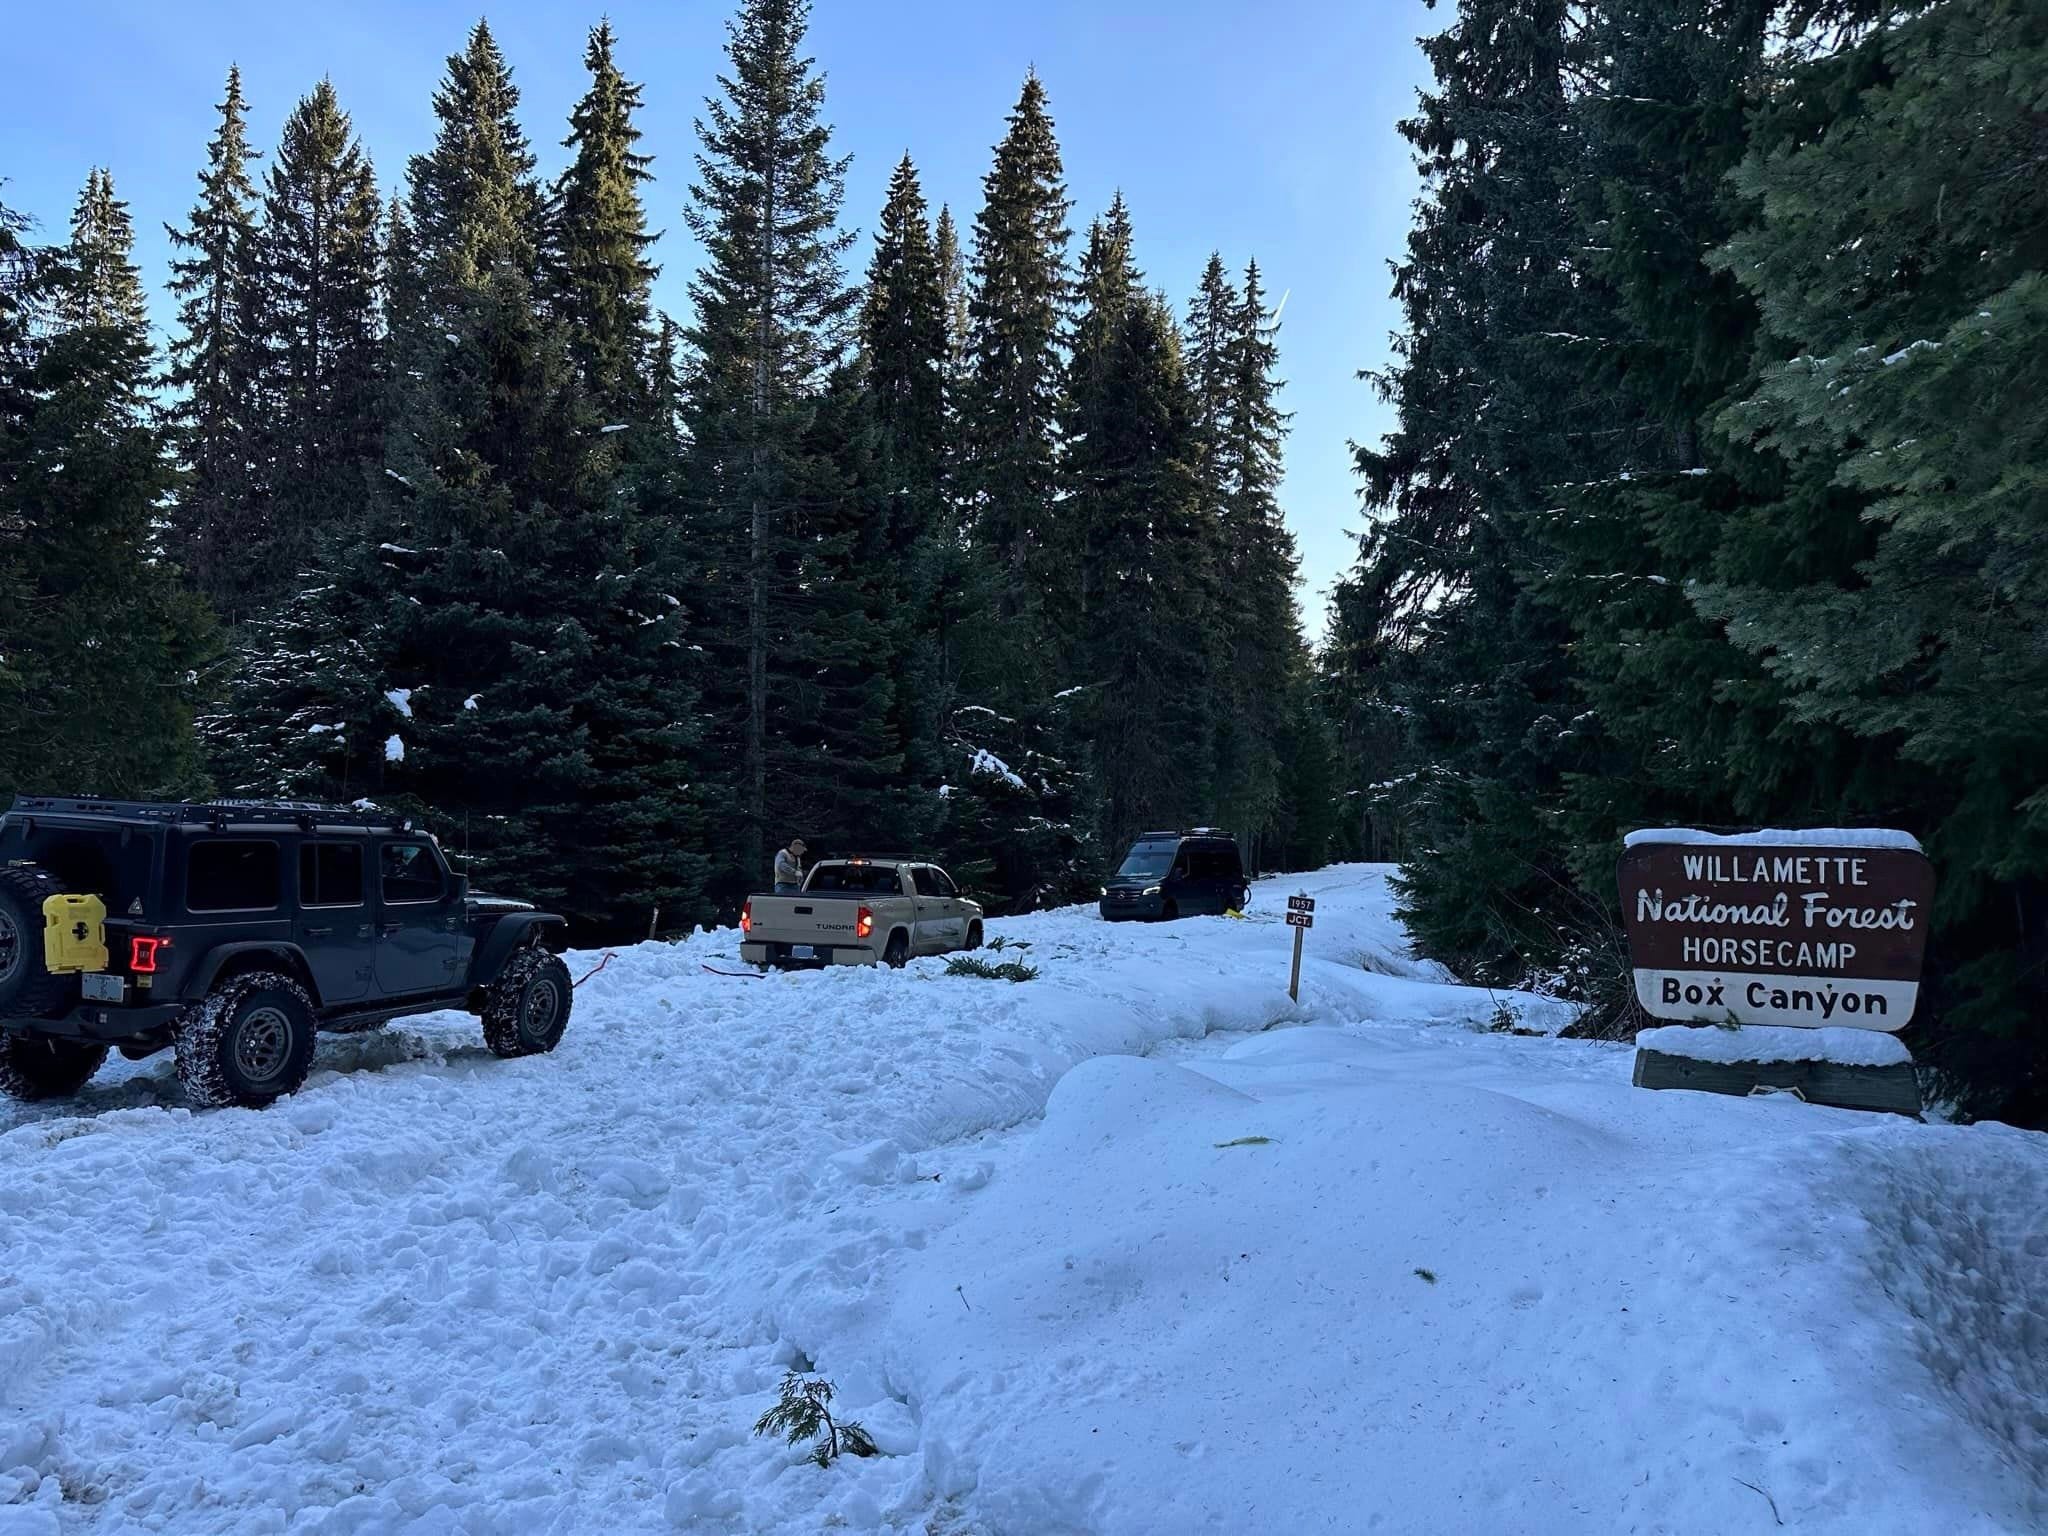 Fahrzeuge stecken auf einer verschneiten Straße, umgeben von Pinien mit einem Schild für den Willamette National Forest.